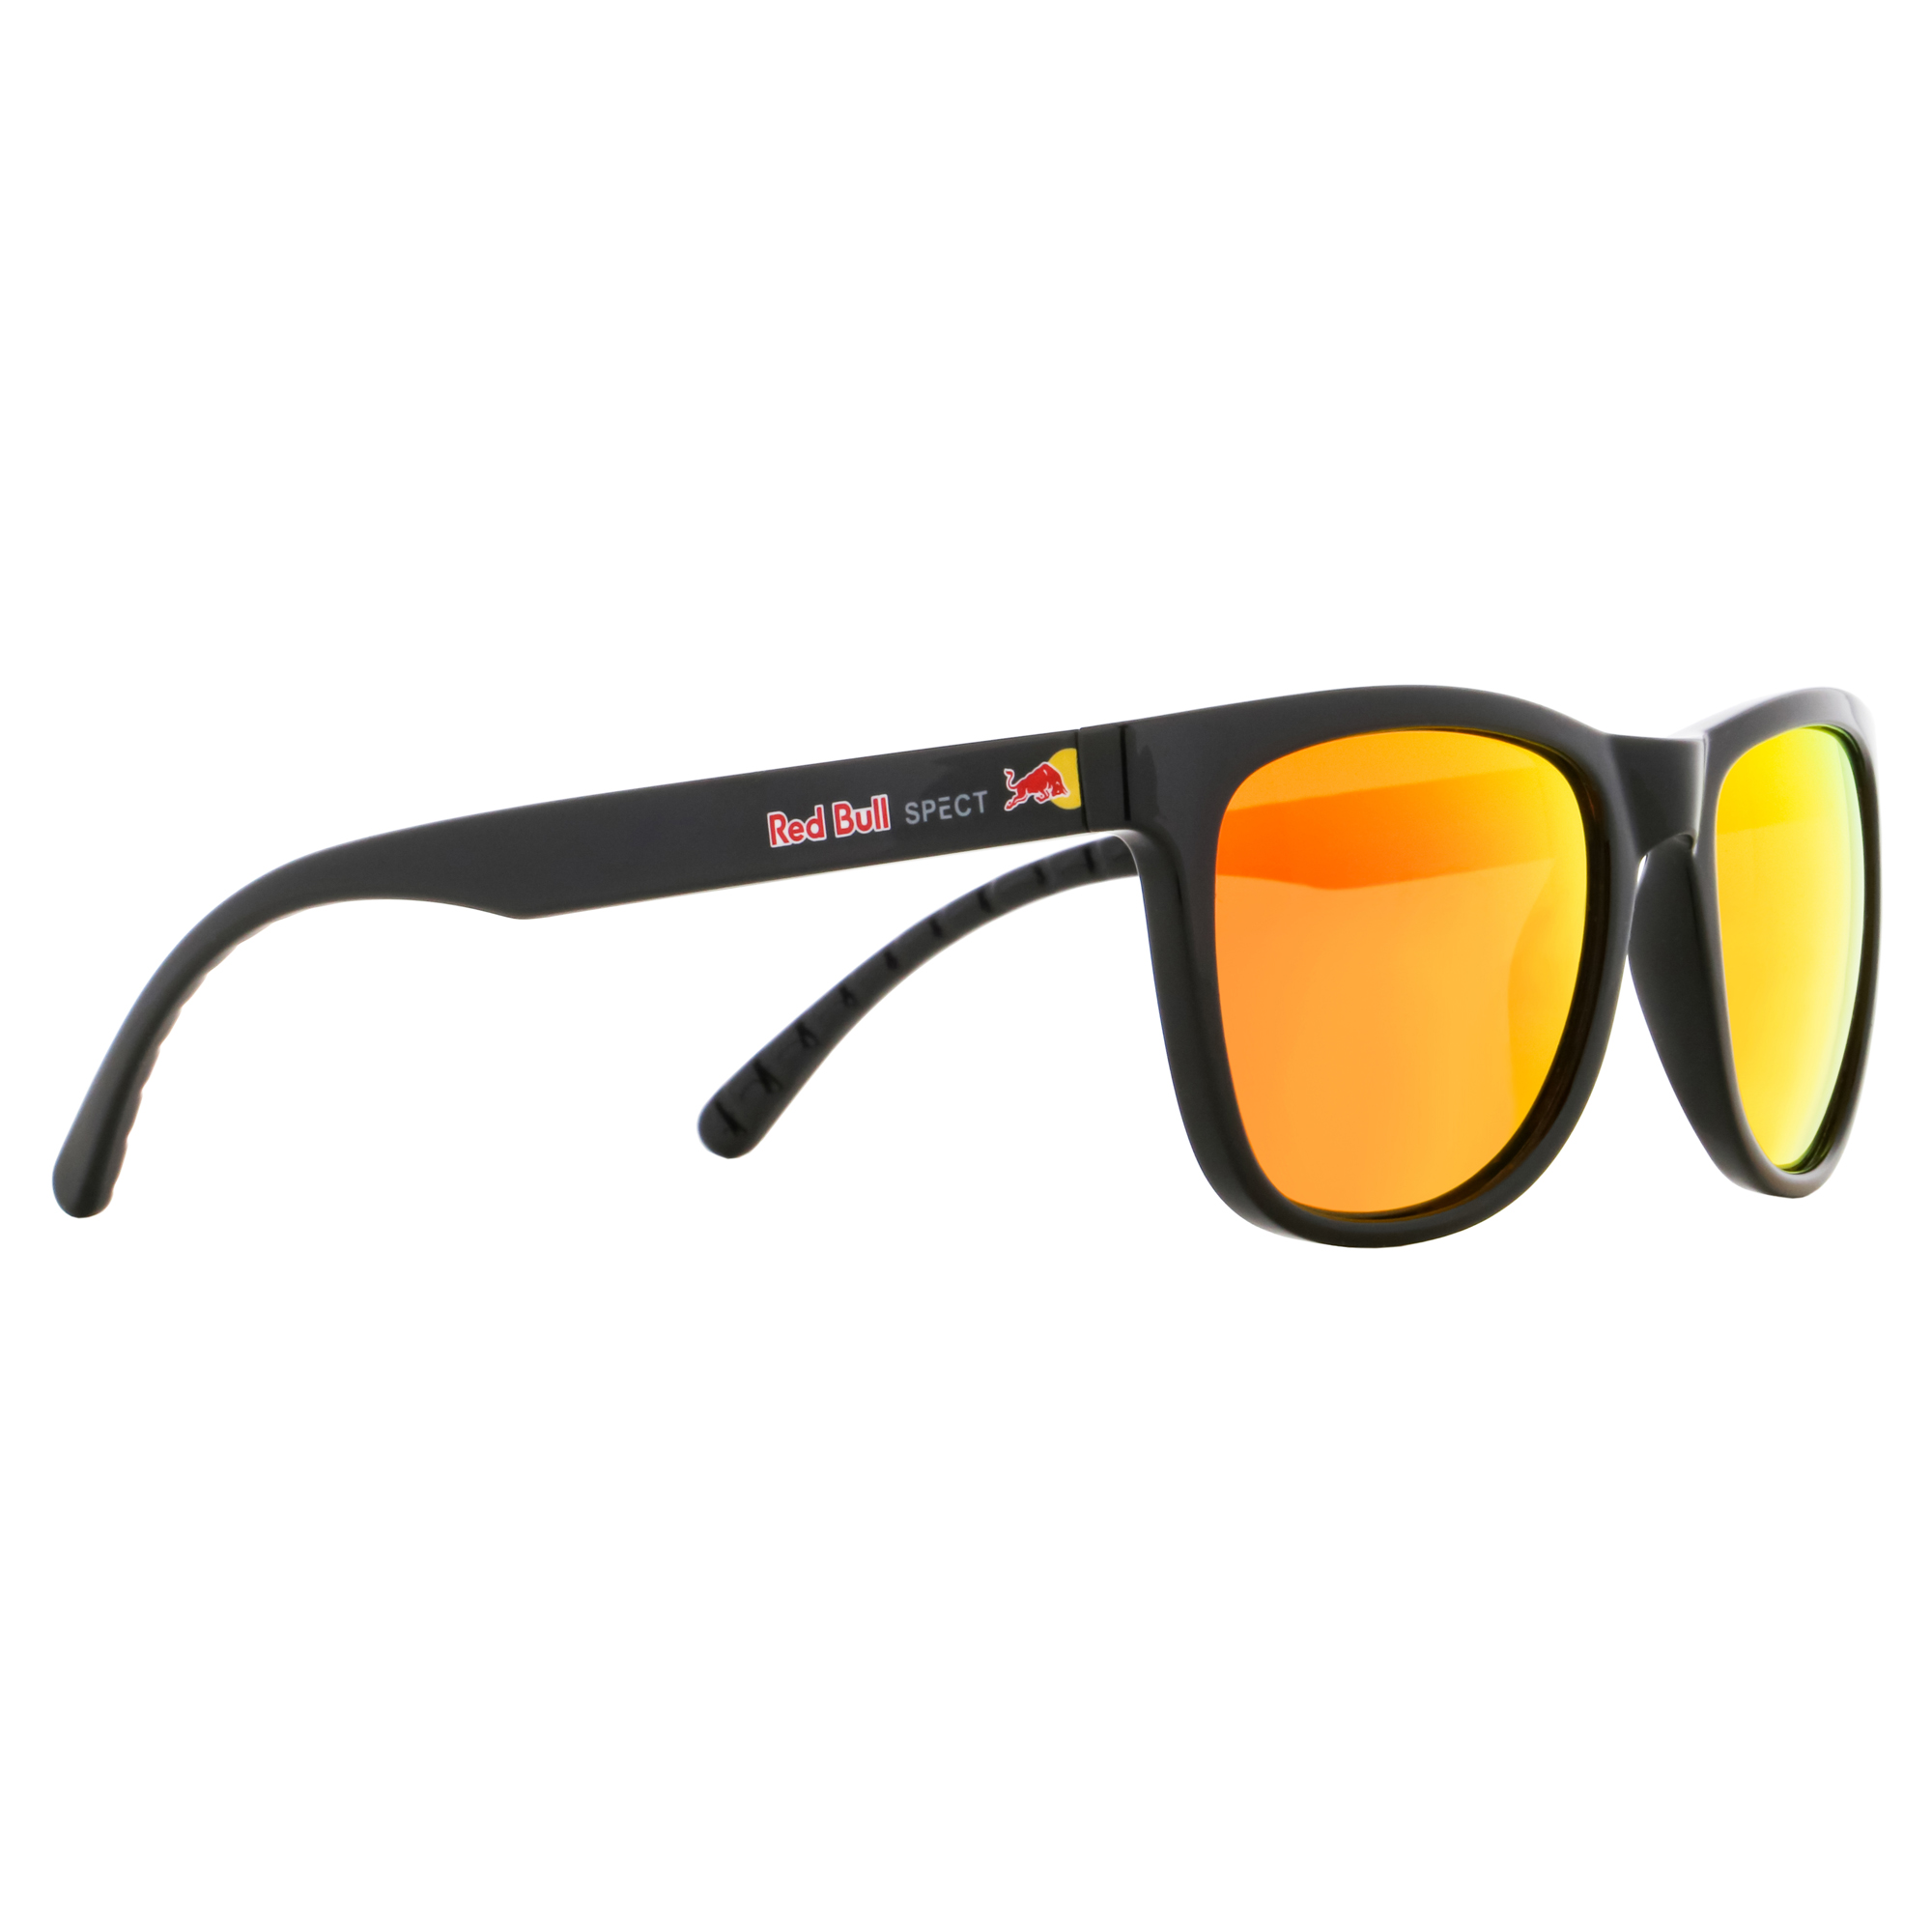 Sunglasses ECOS-003P